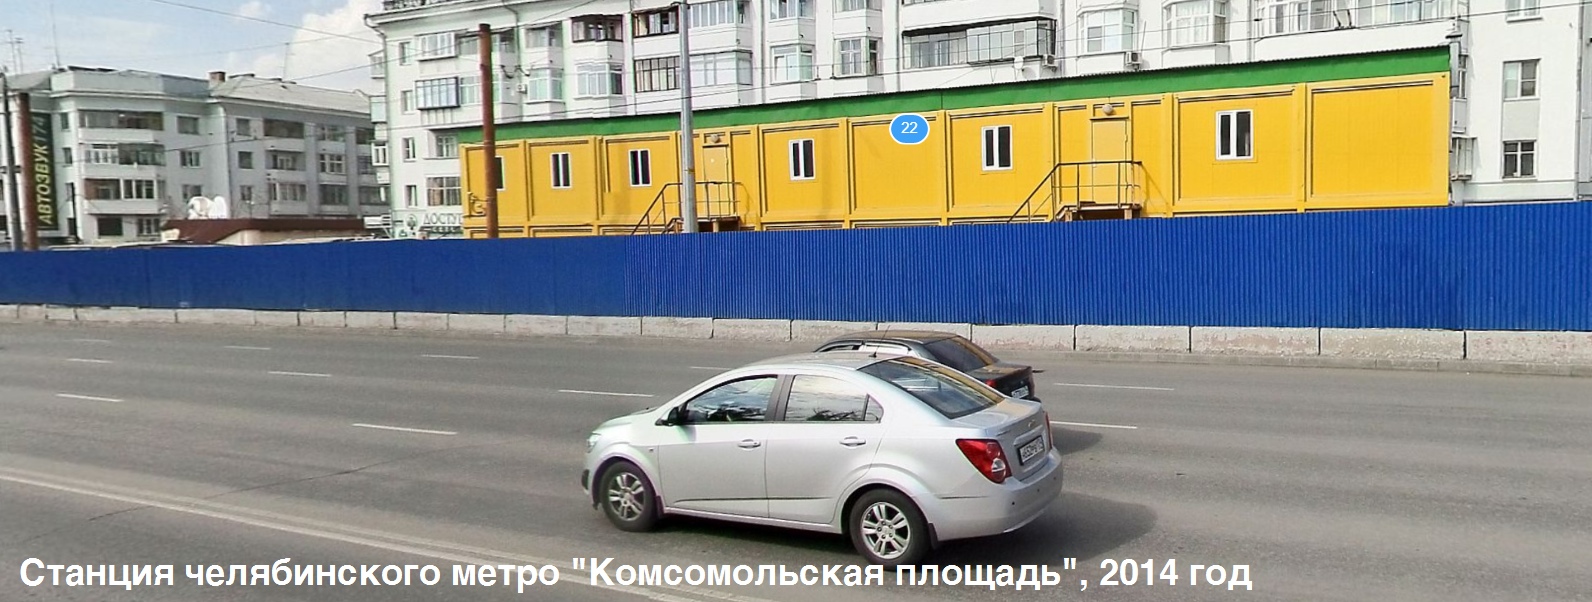 Единственная станция метро в Челябинске: хроника деградации в фотографиях за 10 лет